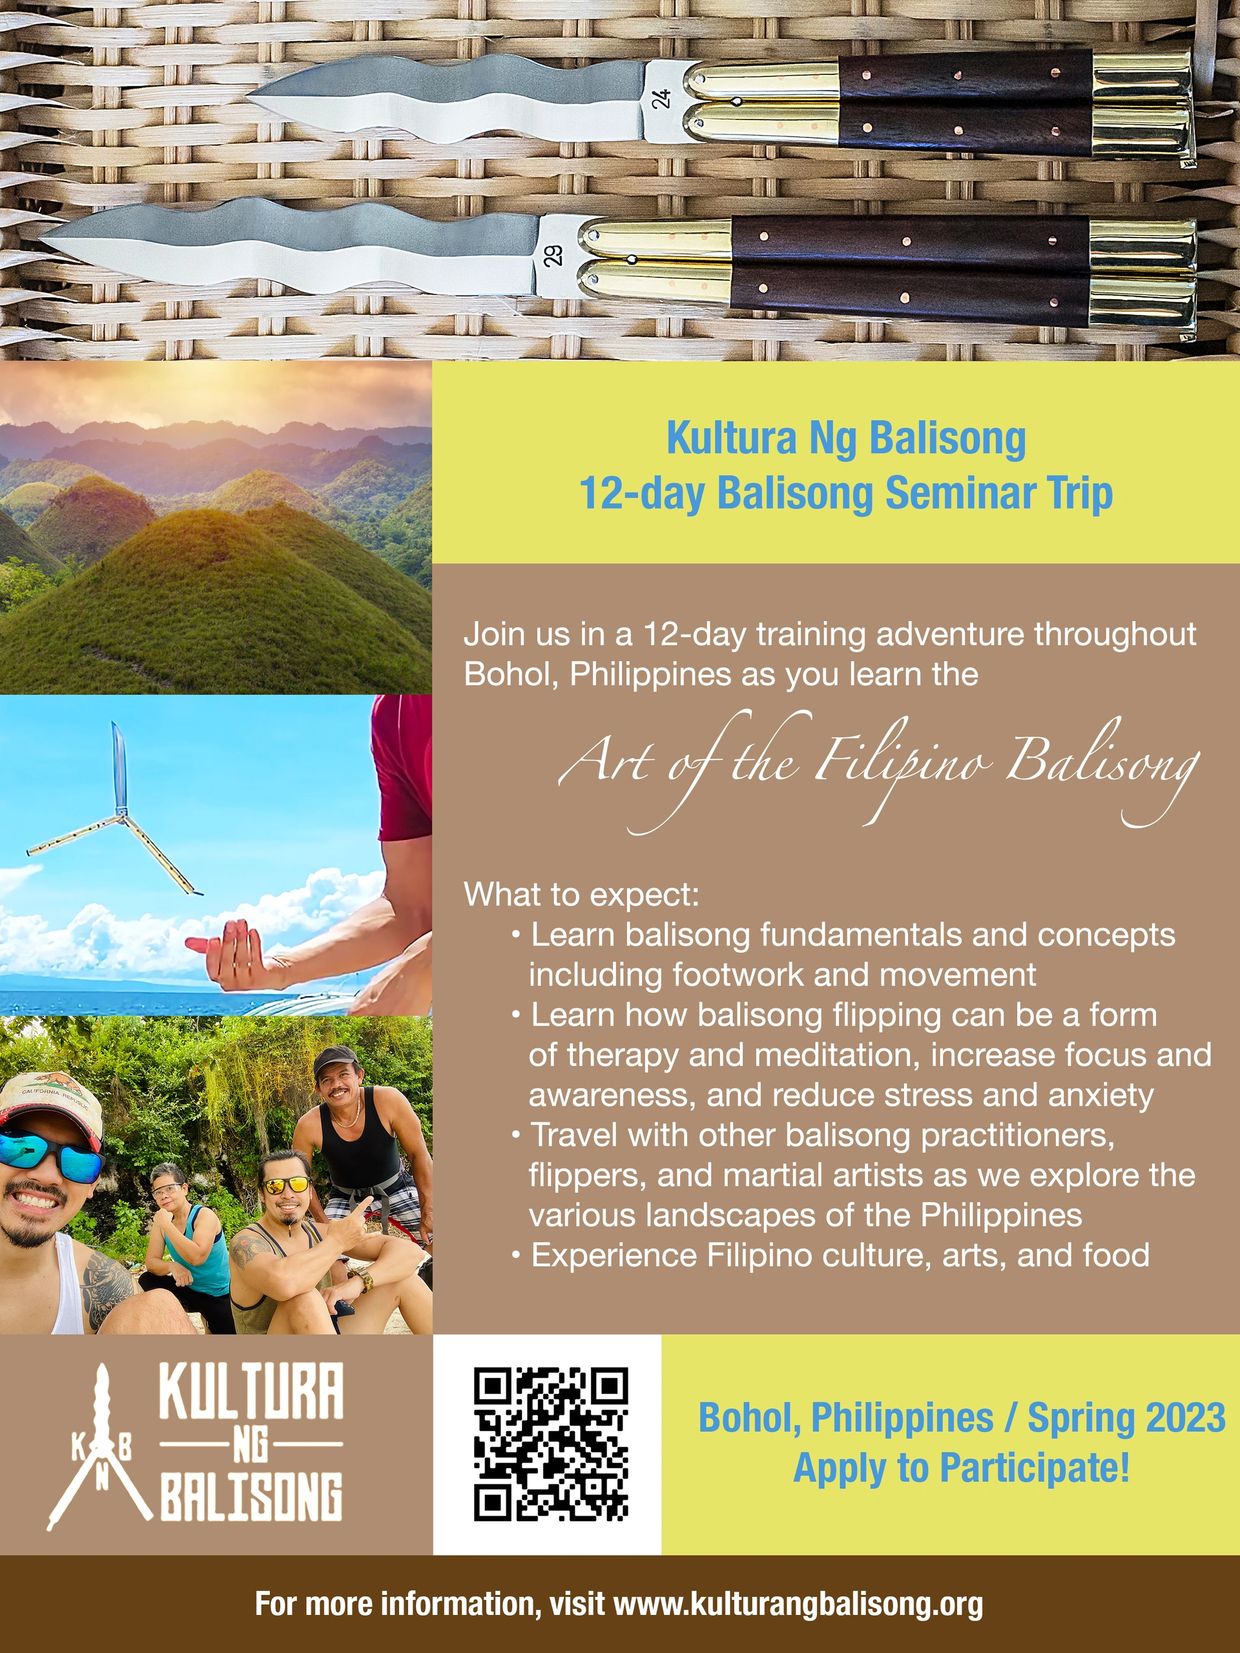 A flyer about the Kultura Ng Balisong seminar trip